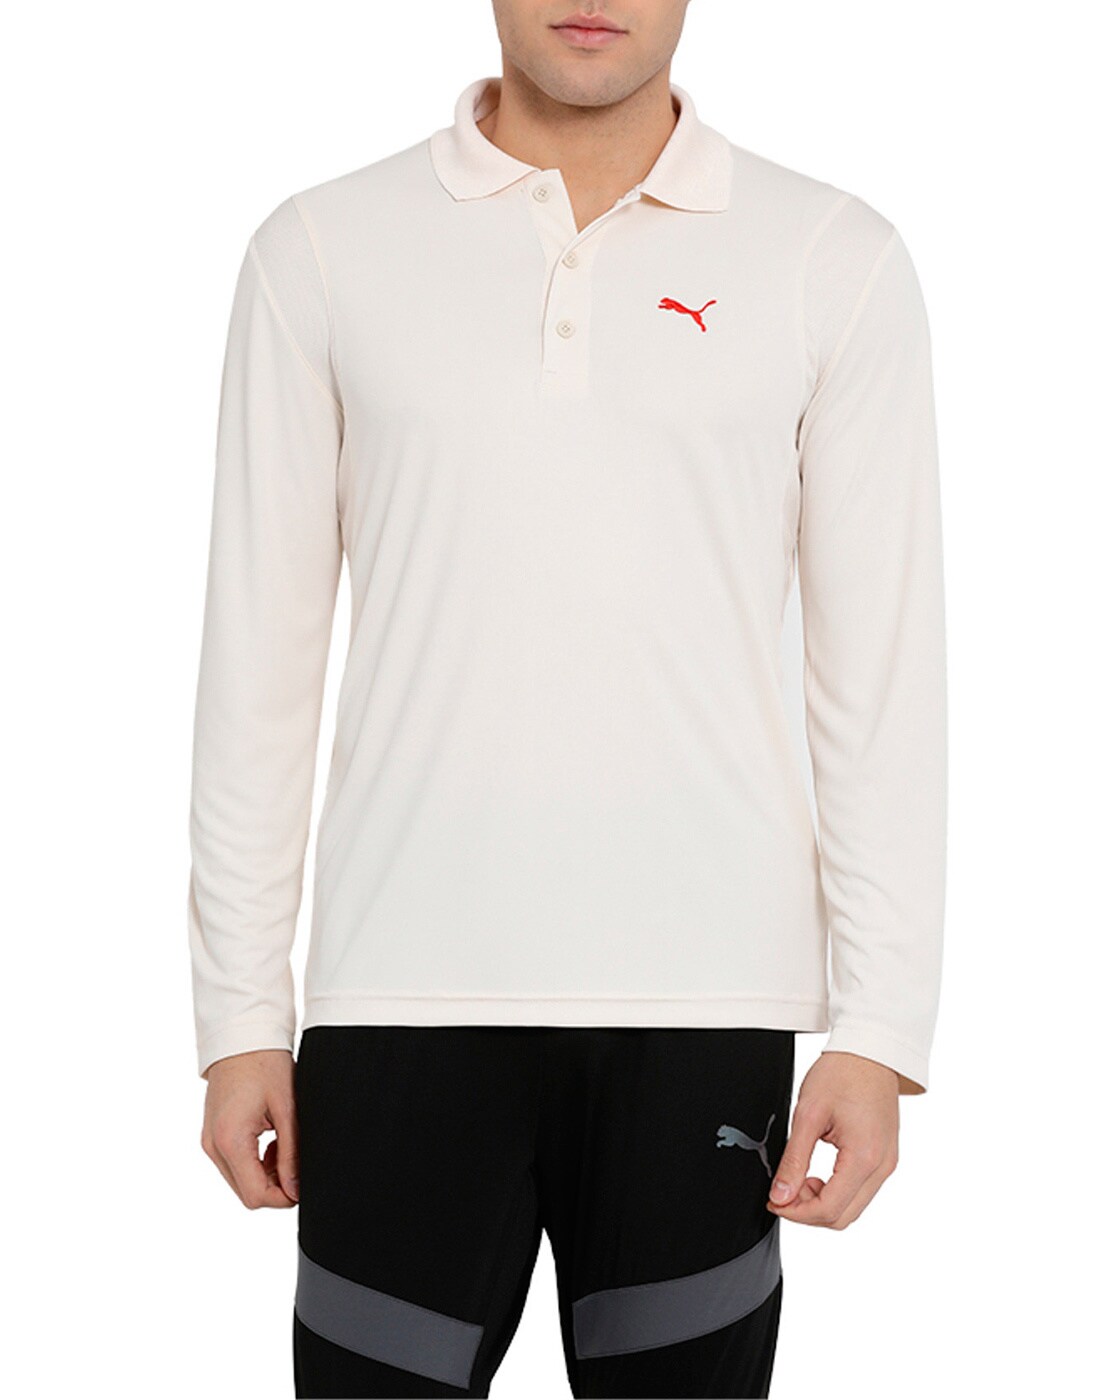 Buy White Tshirts For Men By Puma Online Ajio Com